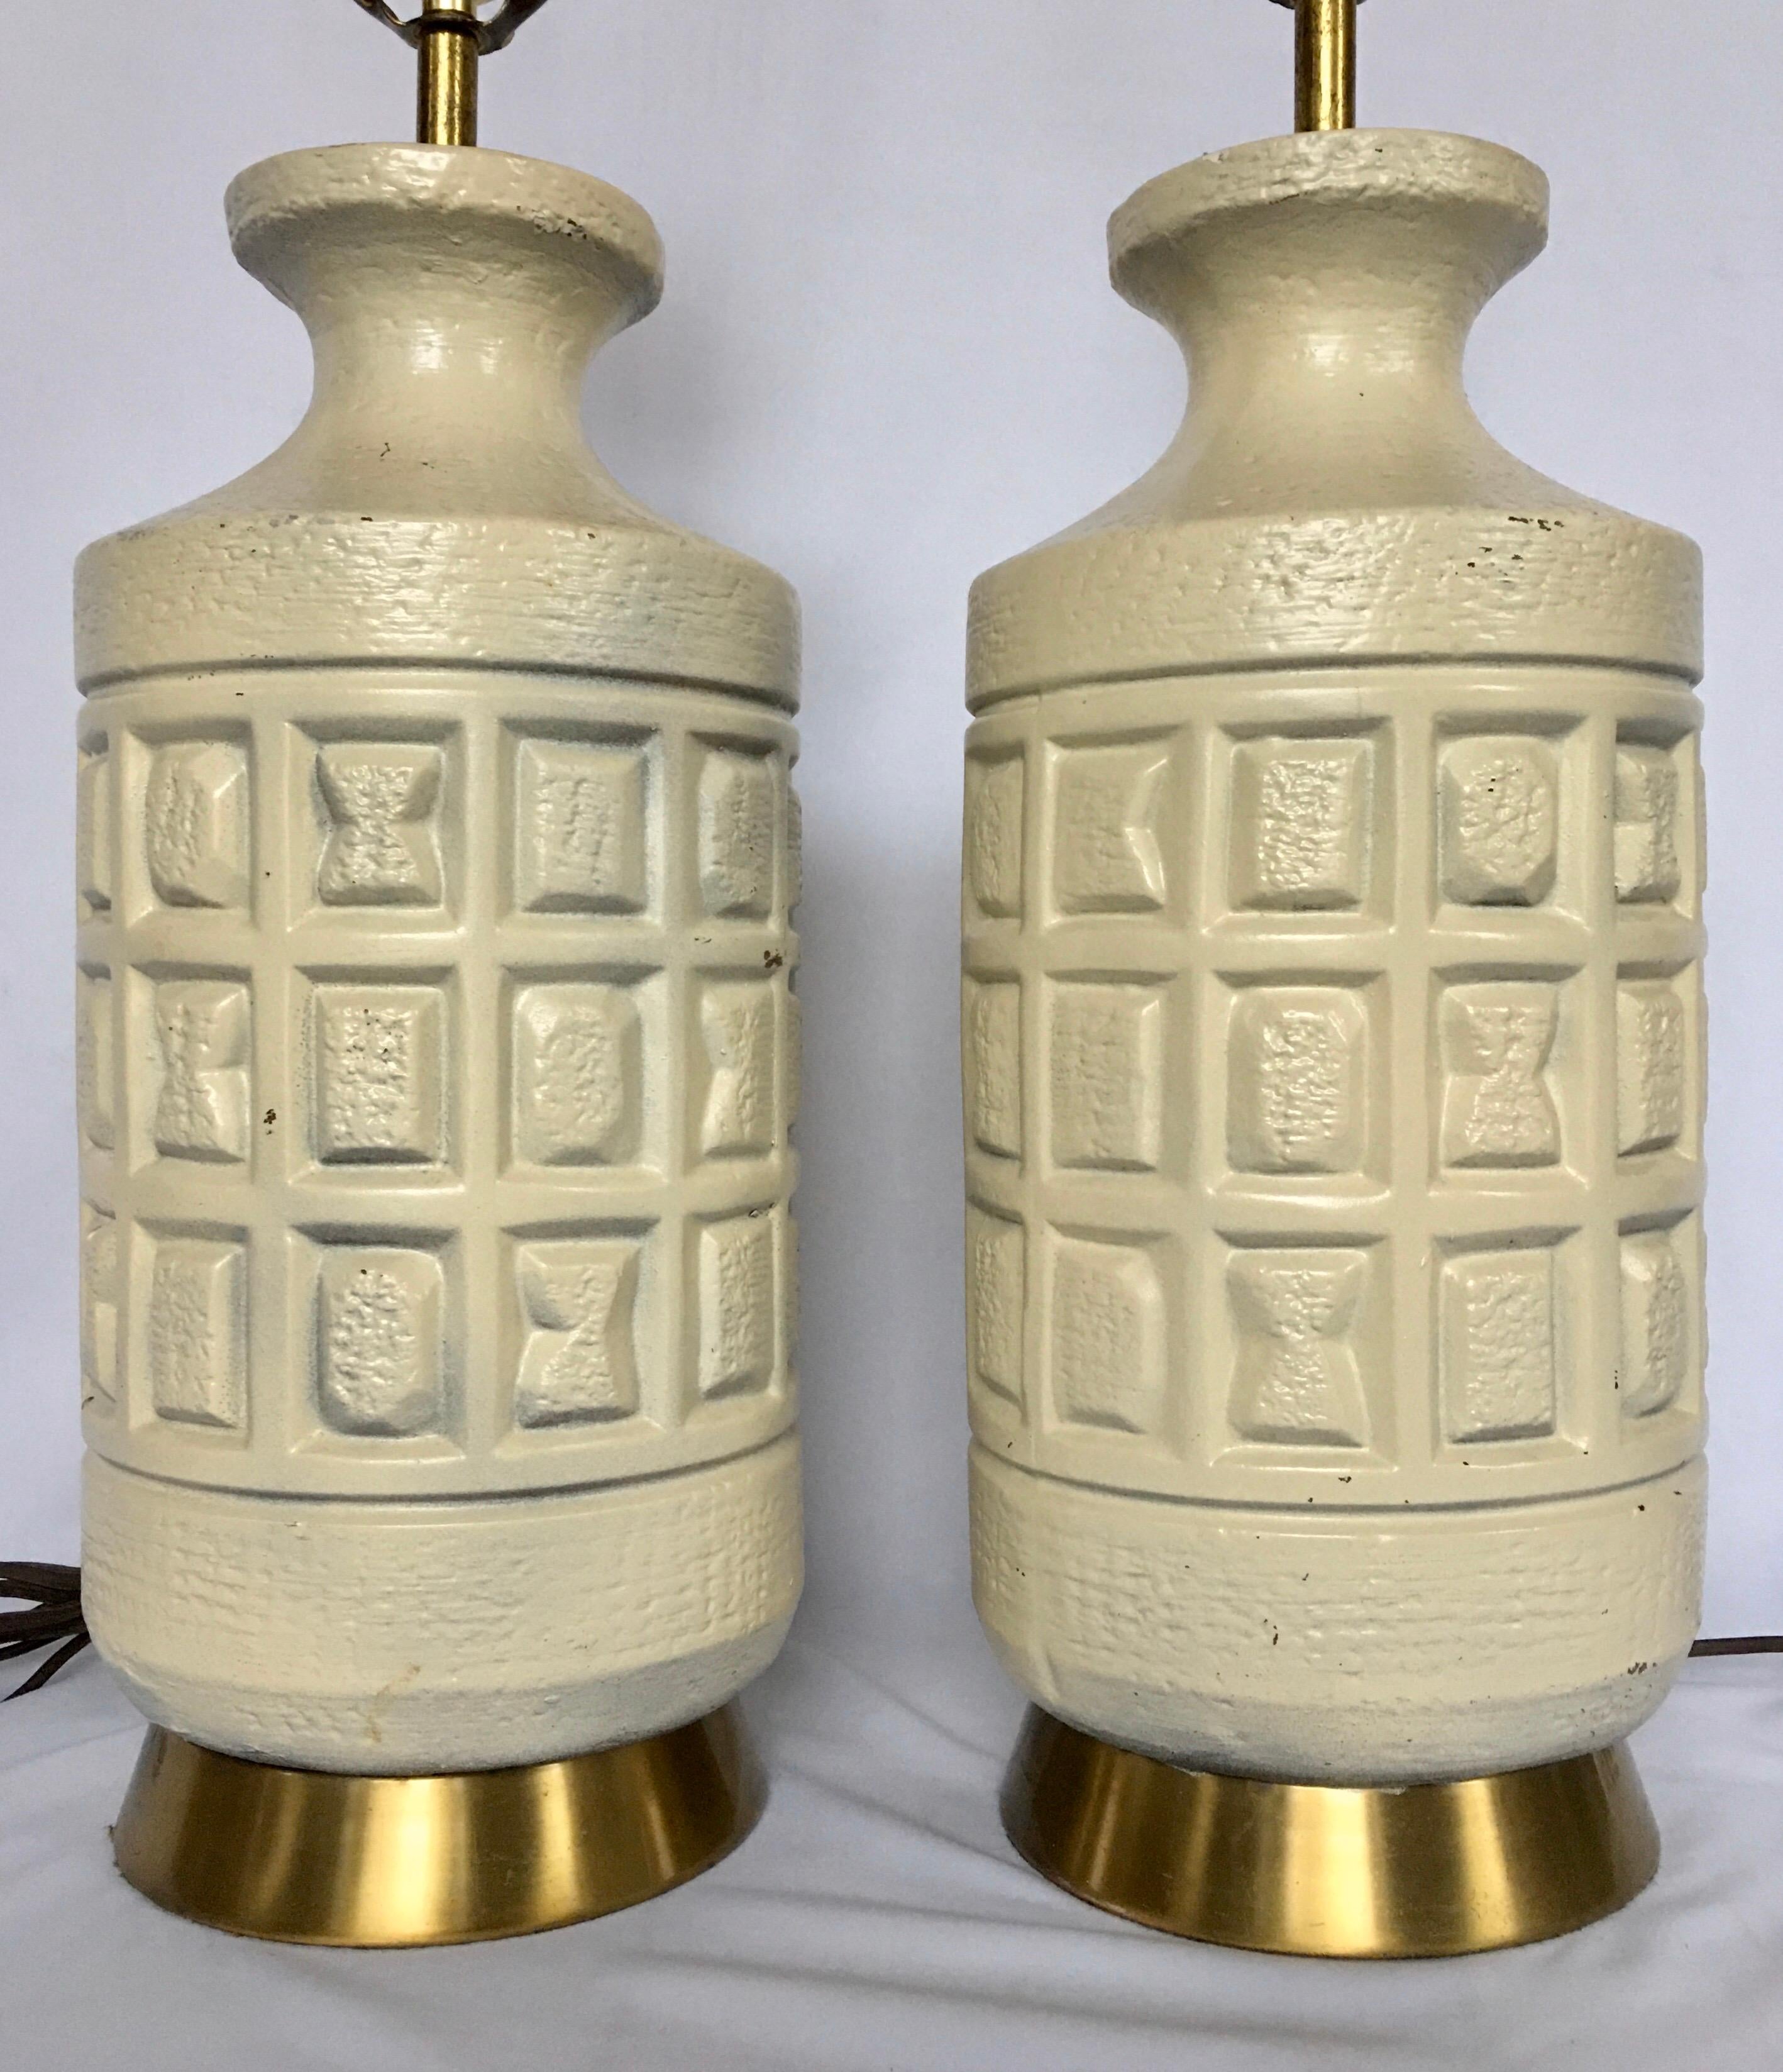 Brutalistisch-moderne Tischlampen aus Keramik aus der Jahrhundertmitte. Diese Tischlampen in kubistischer Form zeichnen sich durch skulpturale, cremefarbene Keramiksockel aus, die mit geometrischen Formen bedruckt und auf Messingfüßen montiert sind.